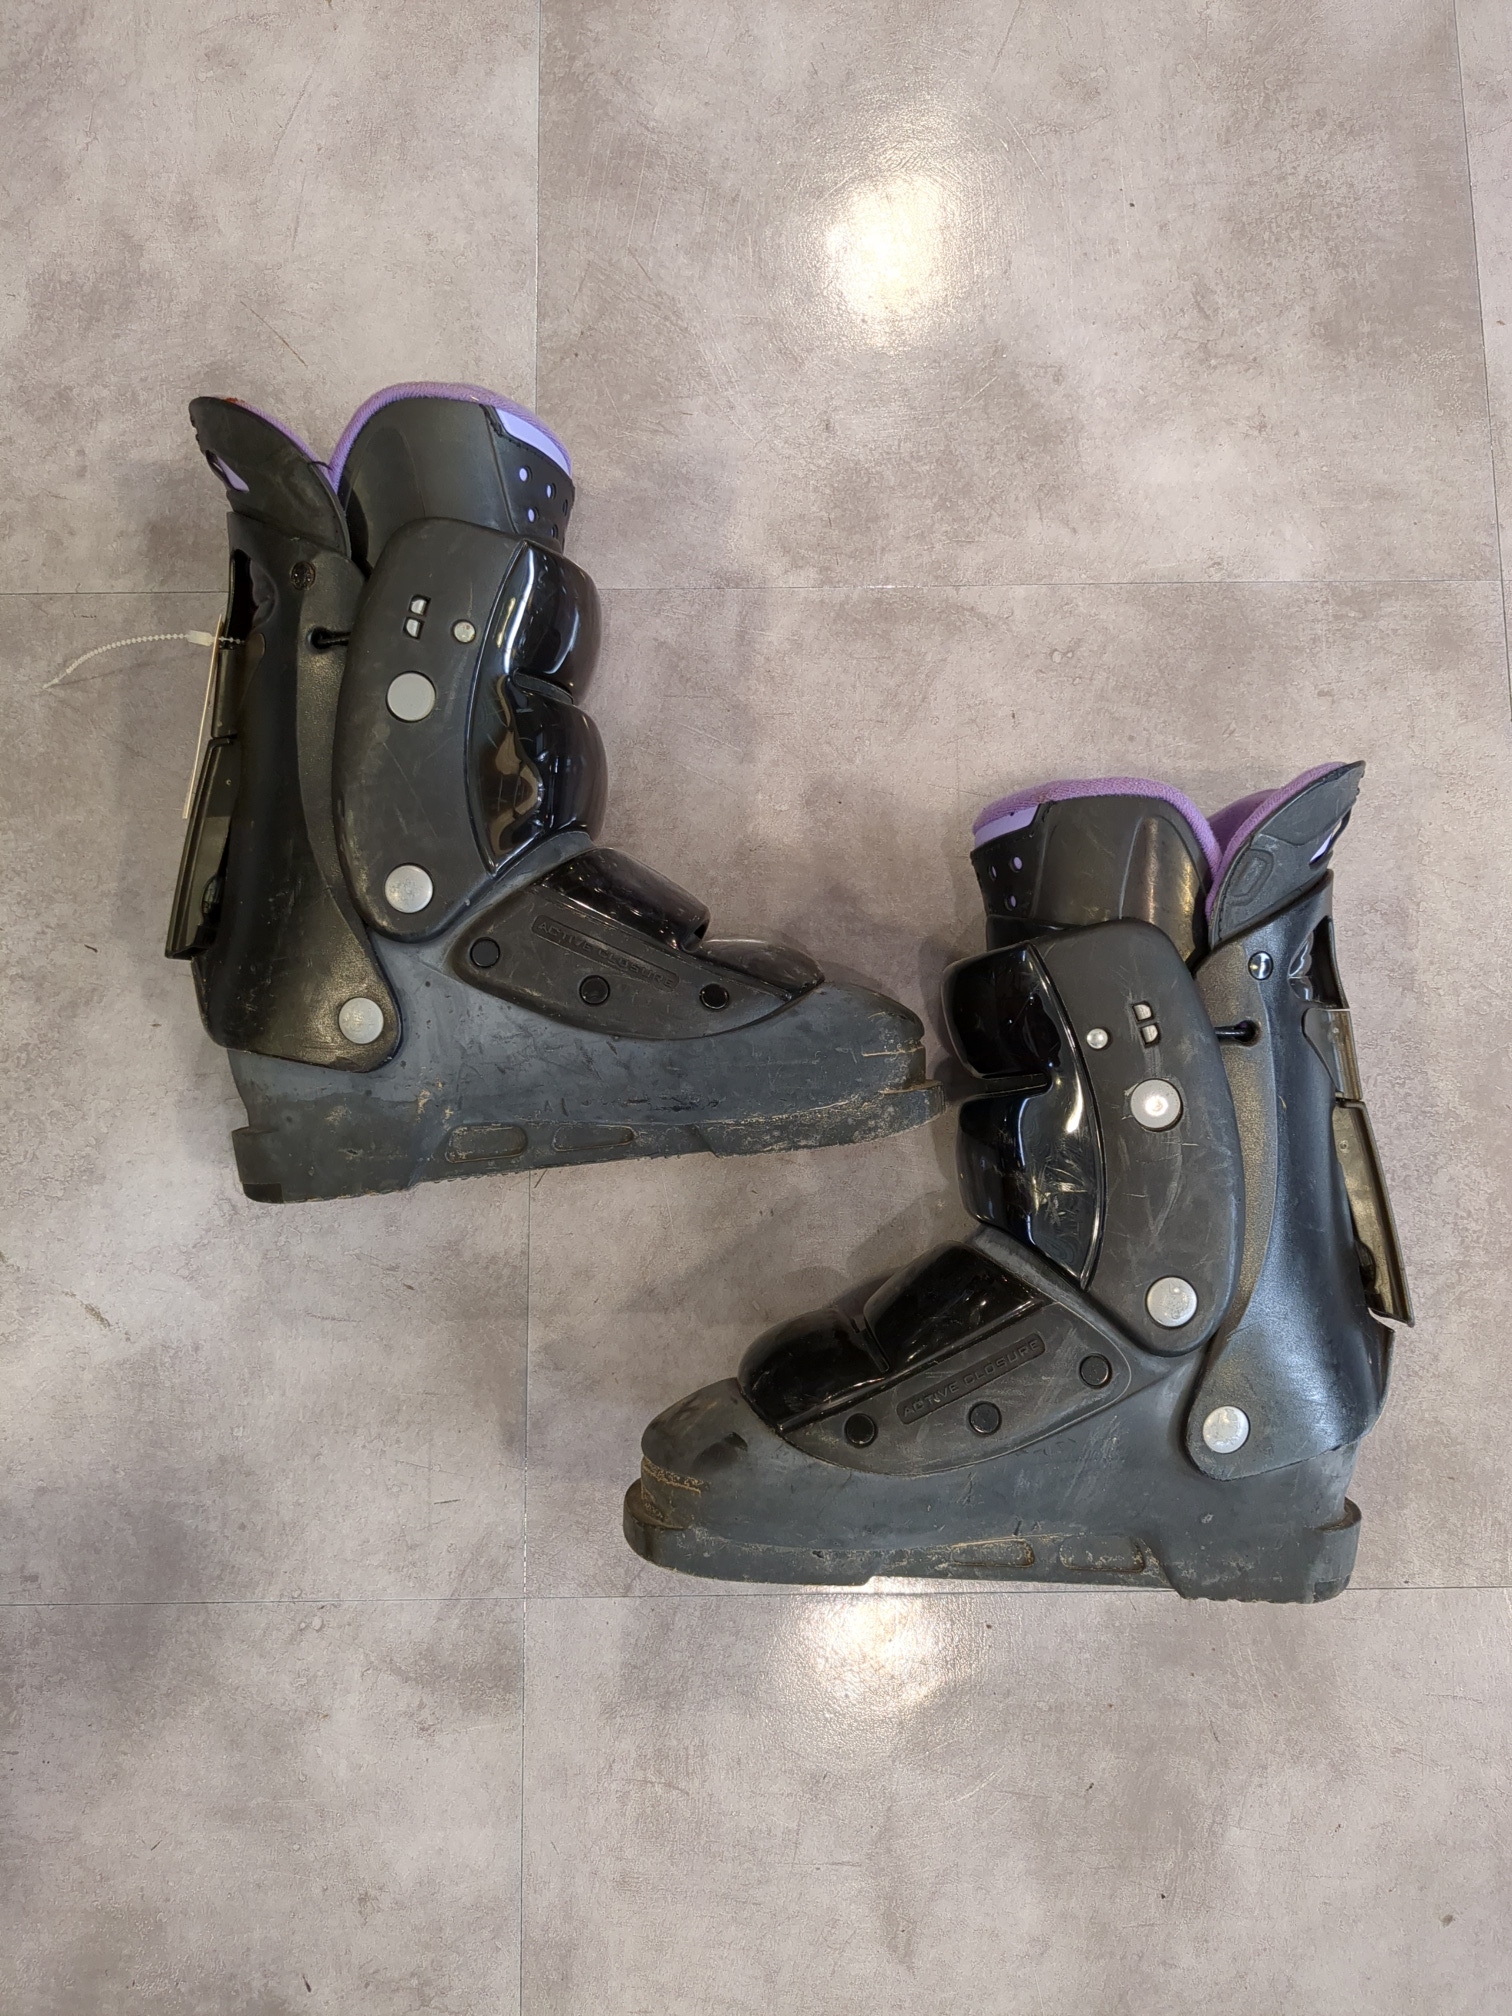 Mondo 22 & mondo 22.5 (263-269mm) Used Women's Nordica Ski Boots